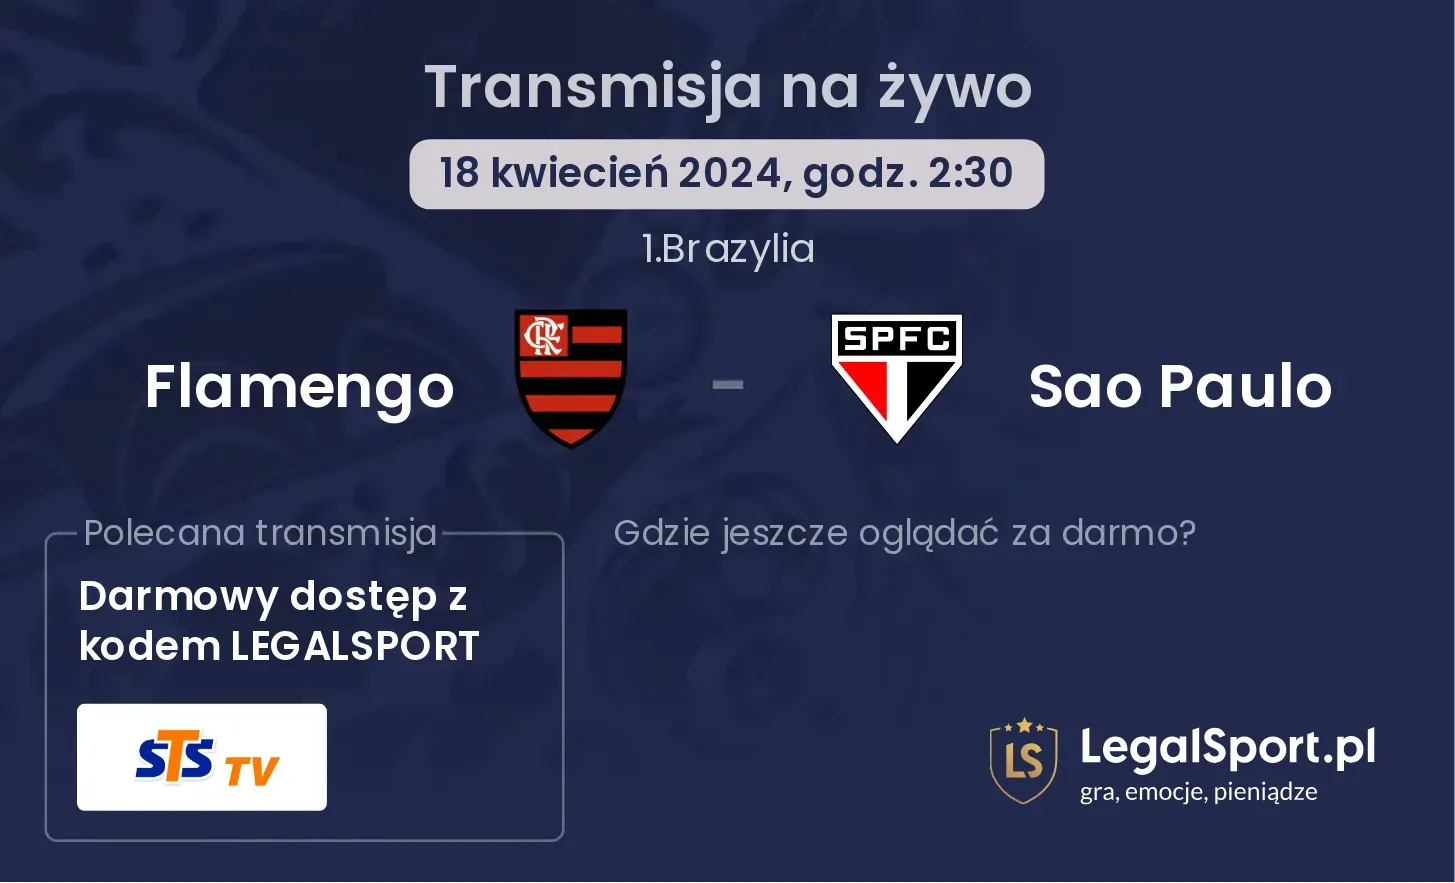 Flamengo - Sao Paulo transmisja na żywo